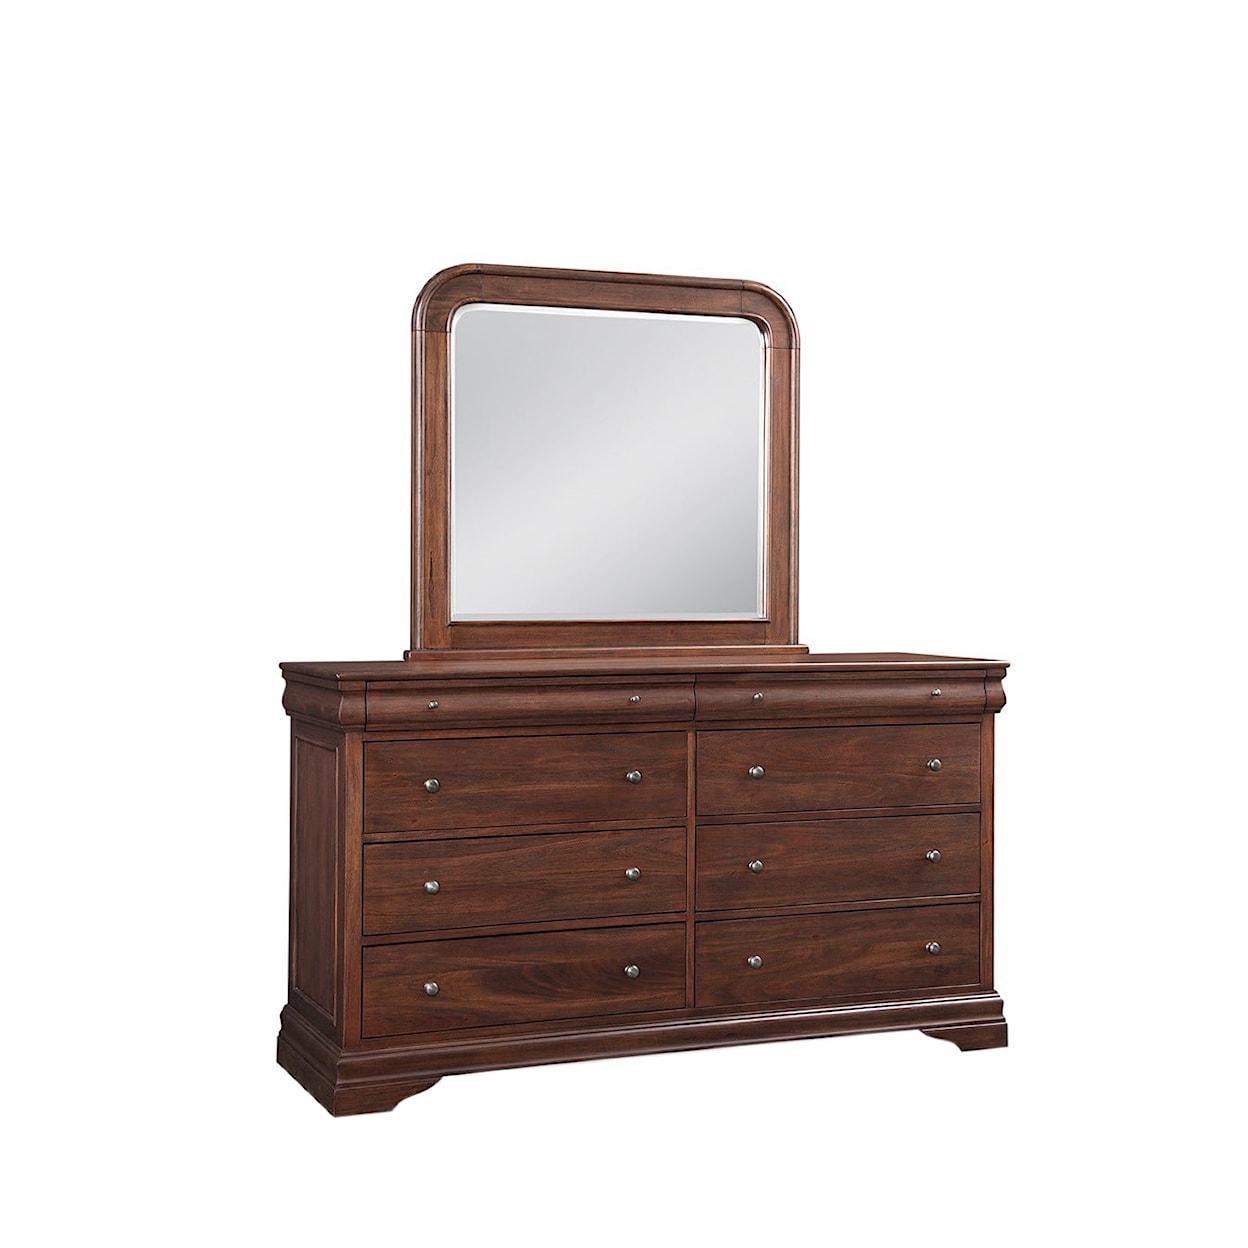 Virginia Furniture Market Solid Wood Montpelier Queen Bedroom Group